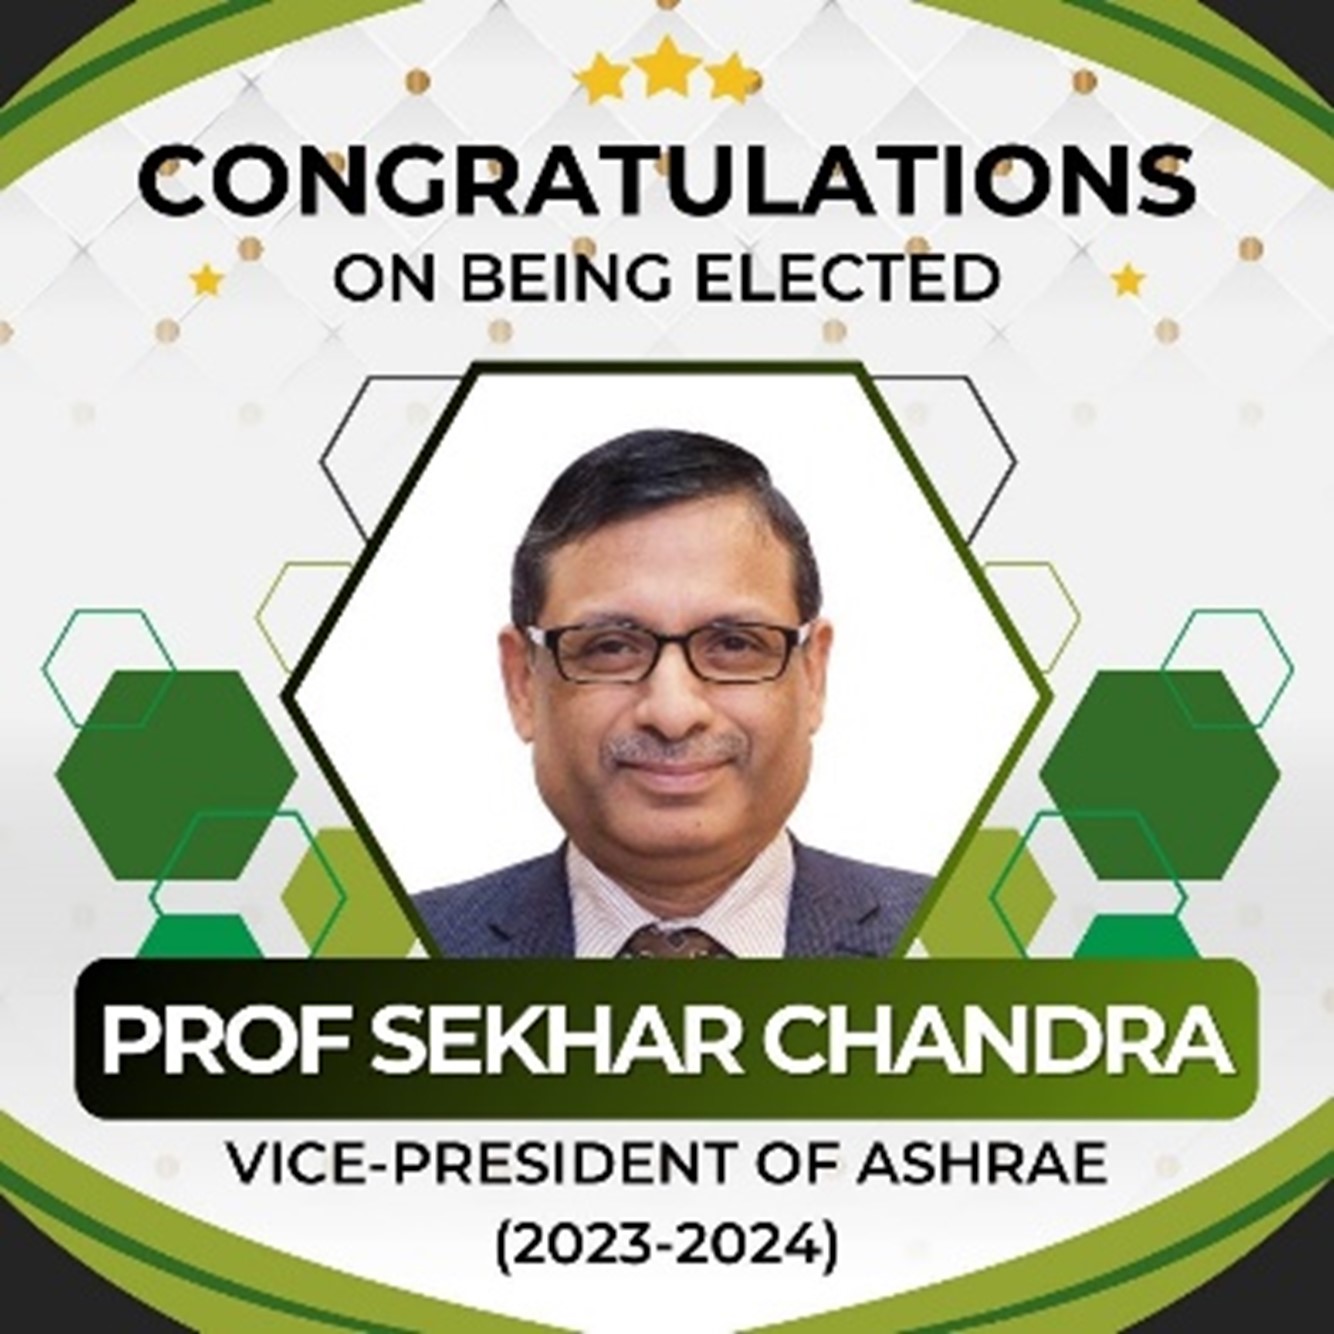 DBE Prof Sekhar Chamdra